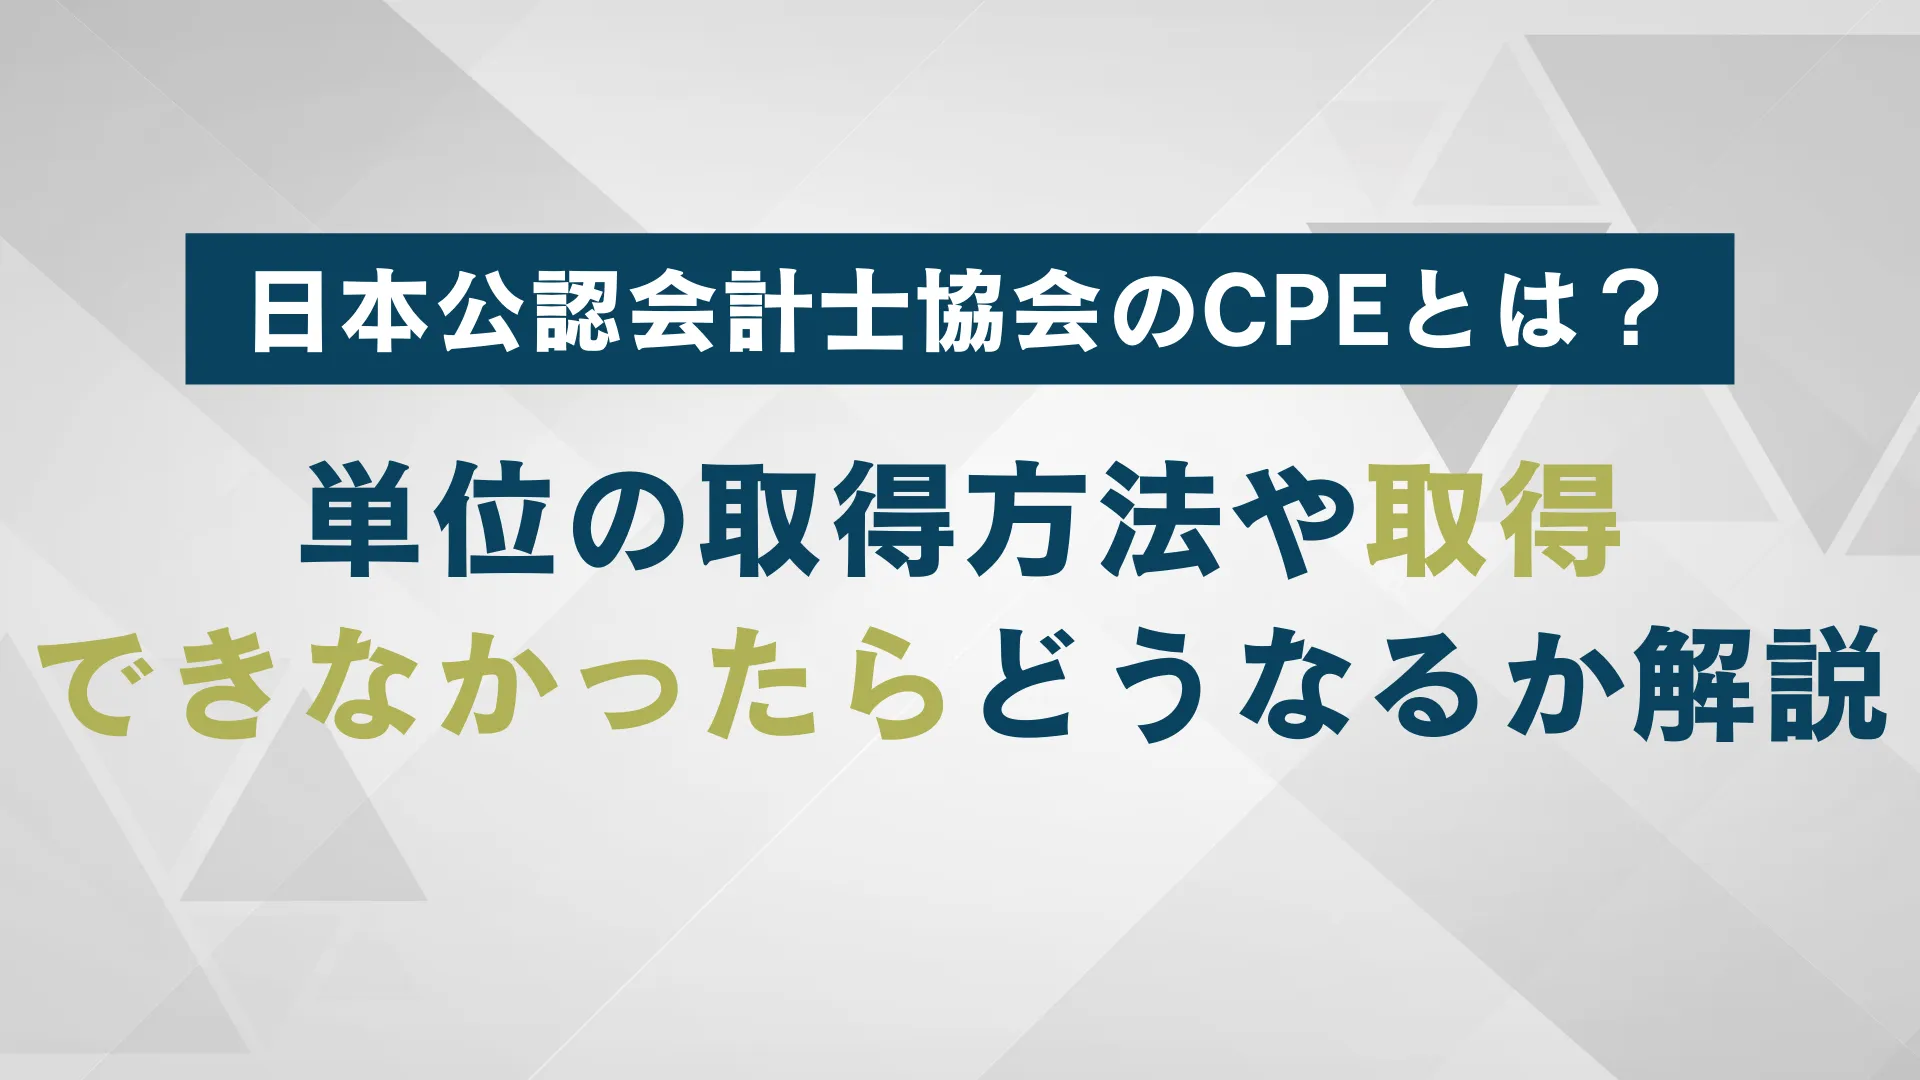 日本公認会計士協会のCPEとは何か？｜単位の取得方法や取得できなかった場合どうなるのかを解説 | WARCエージェント マガジン